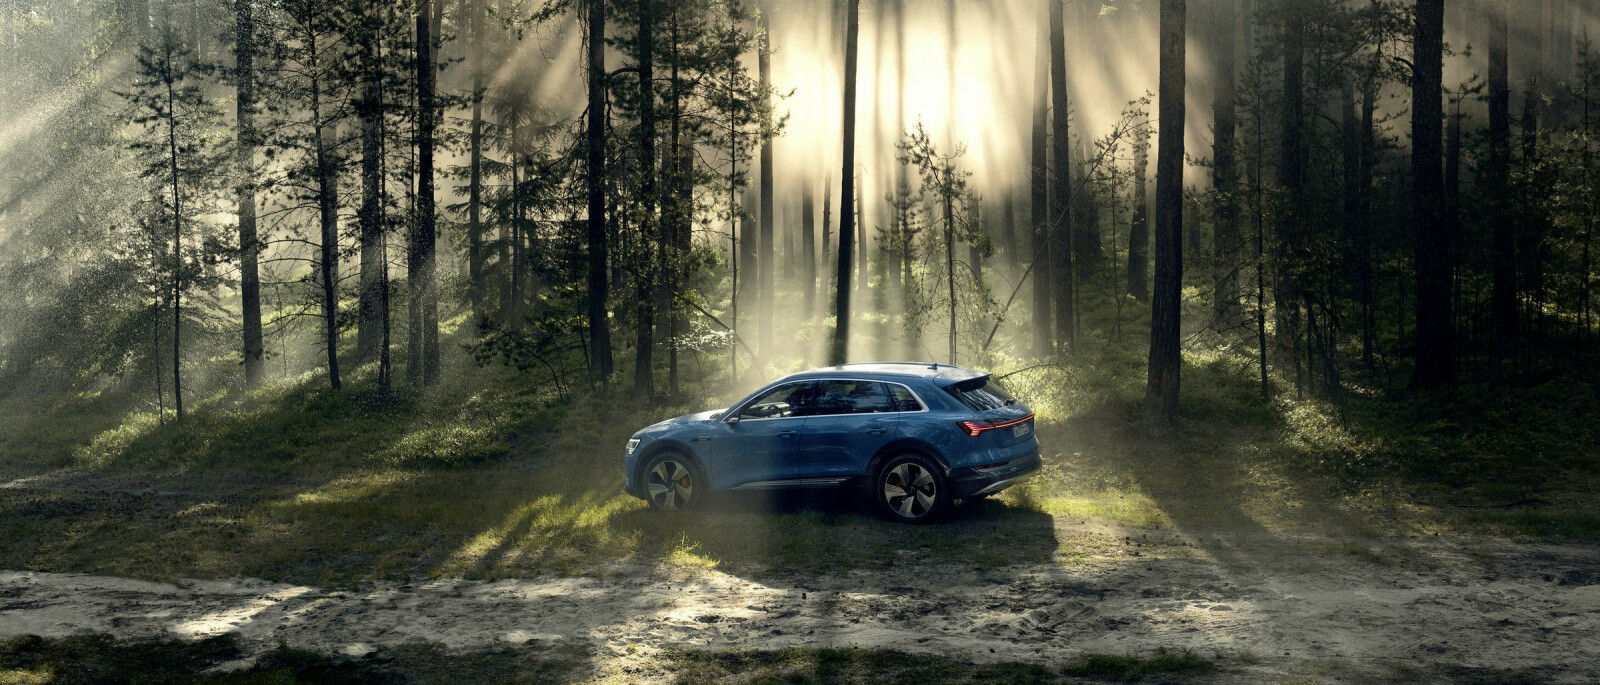 Når Audi melder seg på i elbil-klassen er det med en fullverdig familie-SUV. Det har ikke gått upåaktet hen i Norge.